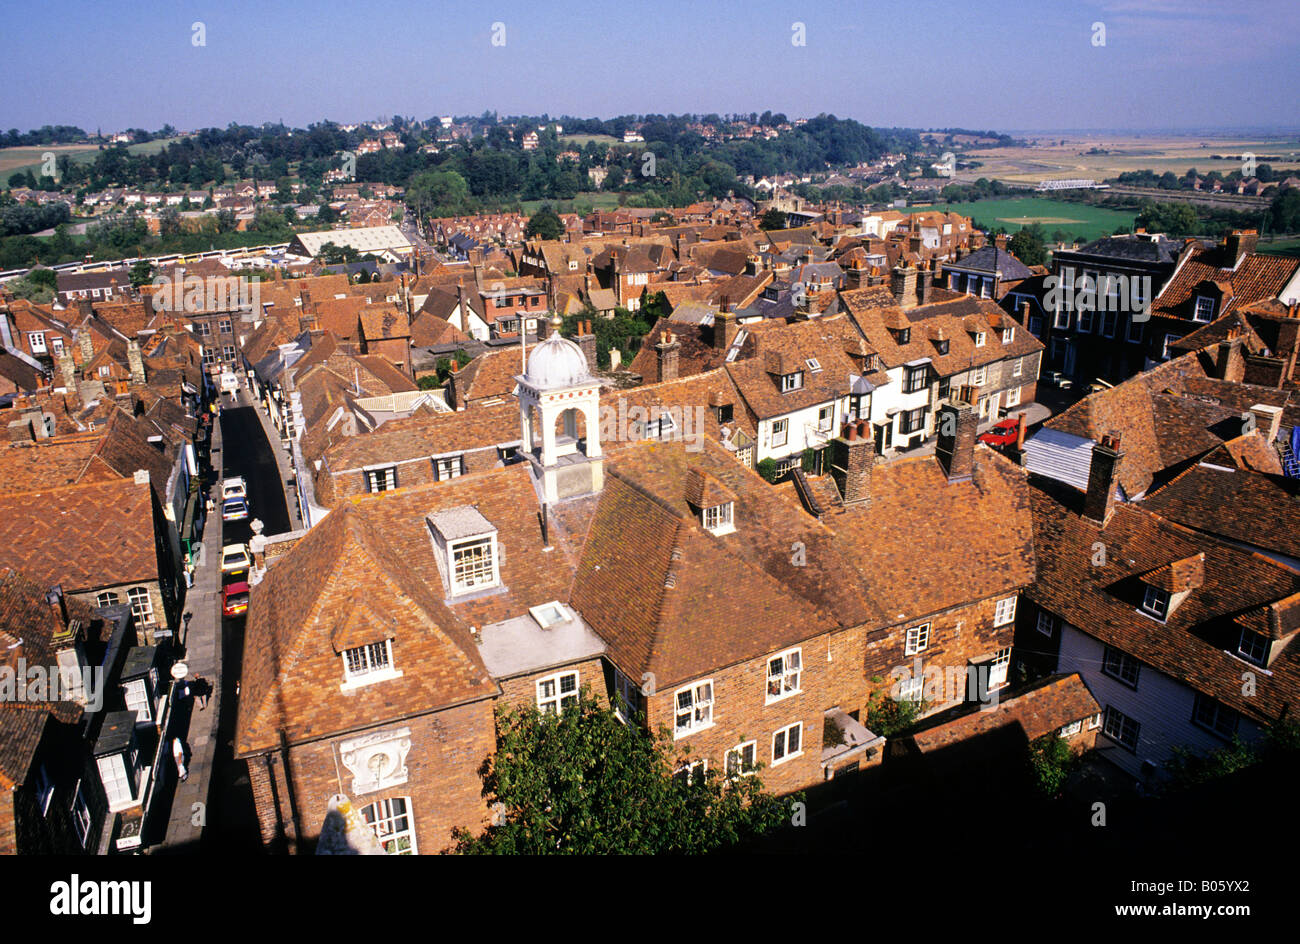 Roggen Sussex Blick auf rotem Ziegeldach Landschaft englische Stadtbild Landschaft allgemeinen Blick auf die Stadt Reisen Tourismus England UK Stockfoto